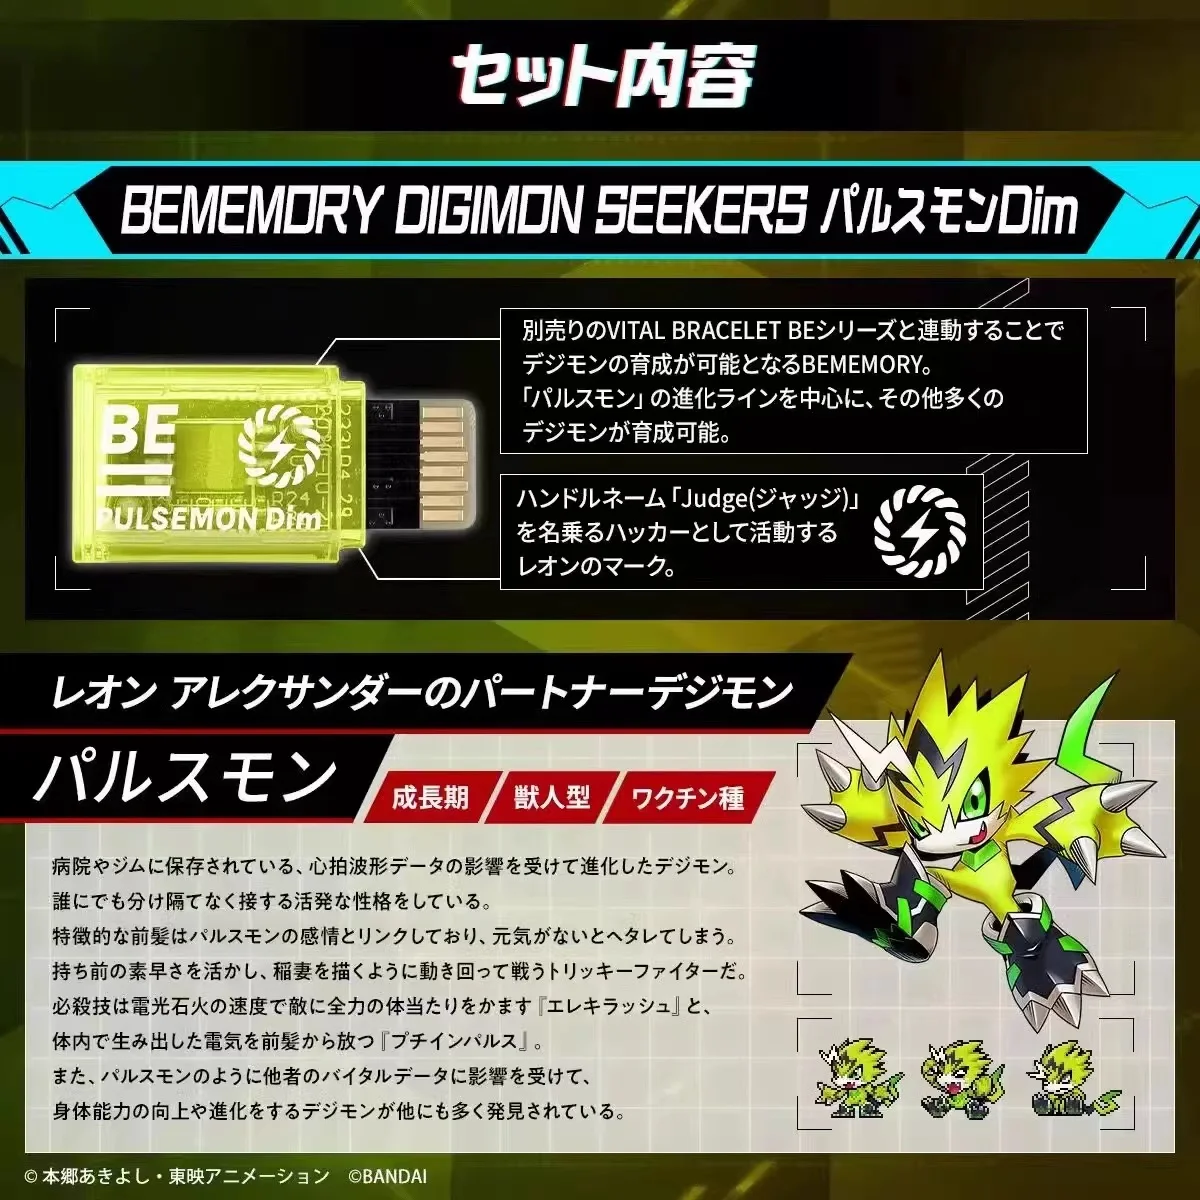 

Защитная пленка Digimon Приключения димм карта стингмон быть памятью Императорский драмон растяжение чудовища 25th Anniv фигурка модельные карты